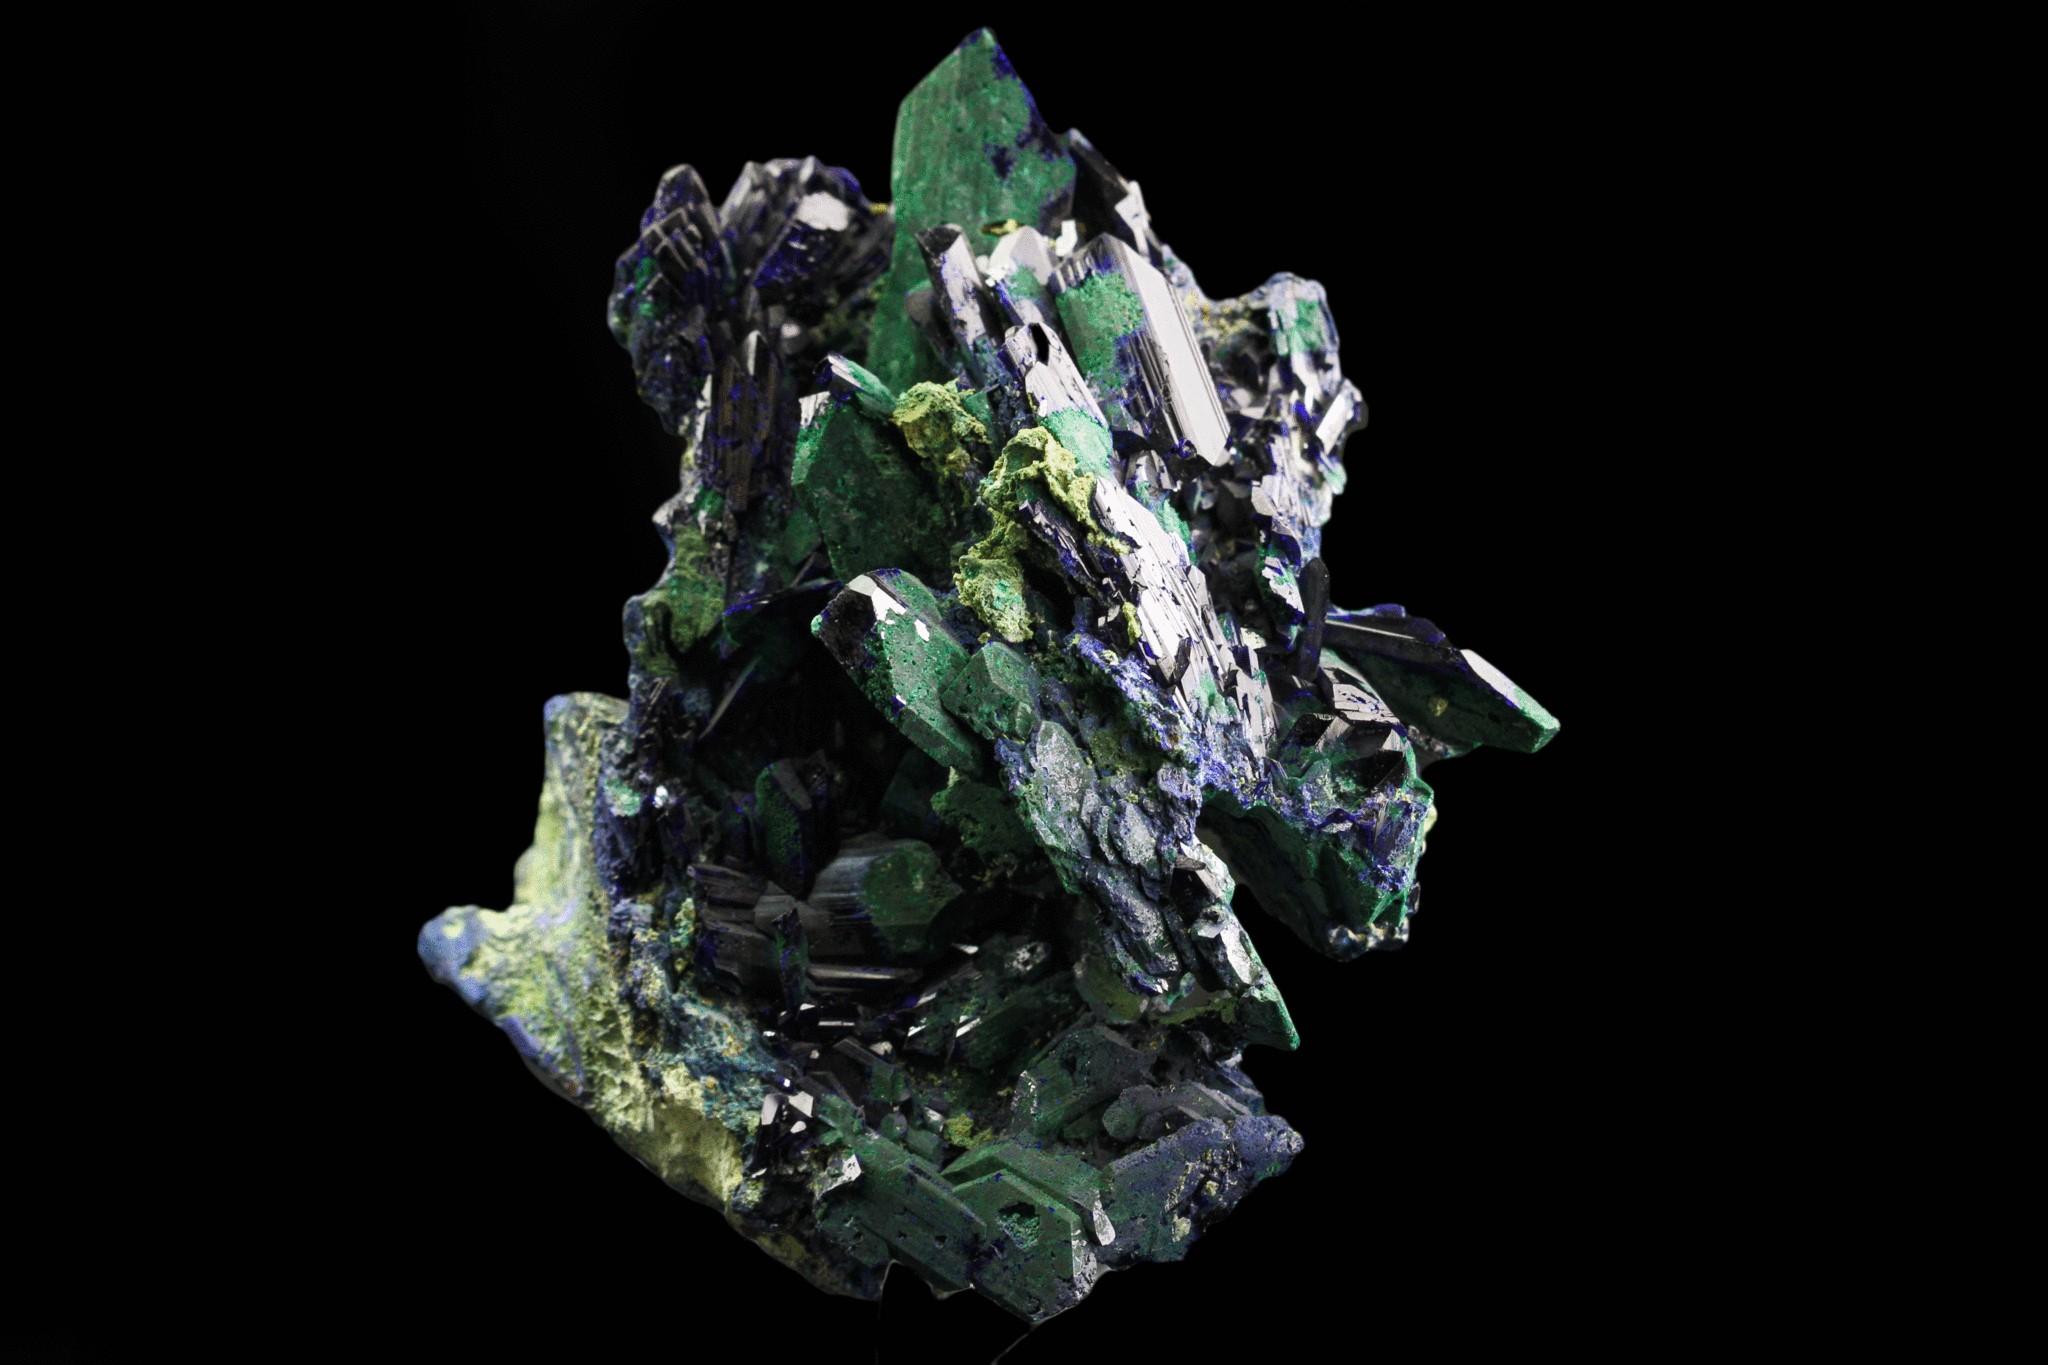 Aus der Tsumeb-Mine, Otavi-Bergland Distrikt, Oshikoto, Namibia

Komplexes Kreuzungscluster aus Azuritkristallen mit Bereichen, die nach Azurit zu grünem Malachitpseudomorph umgewandelt sind. Die Kristalle sind langgestreckte prismatische